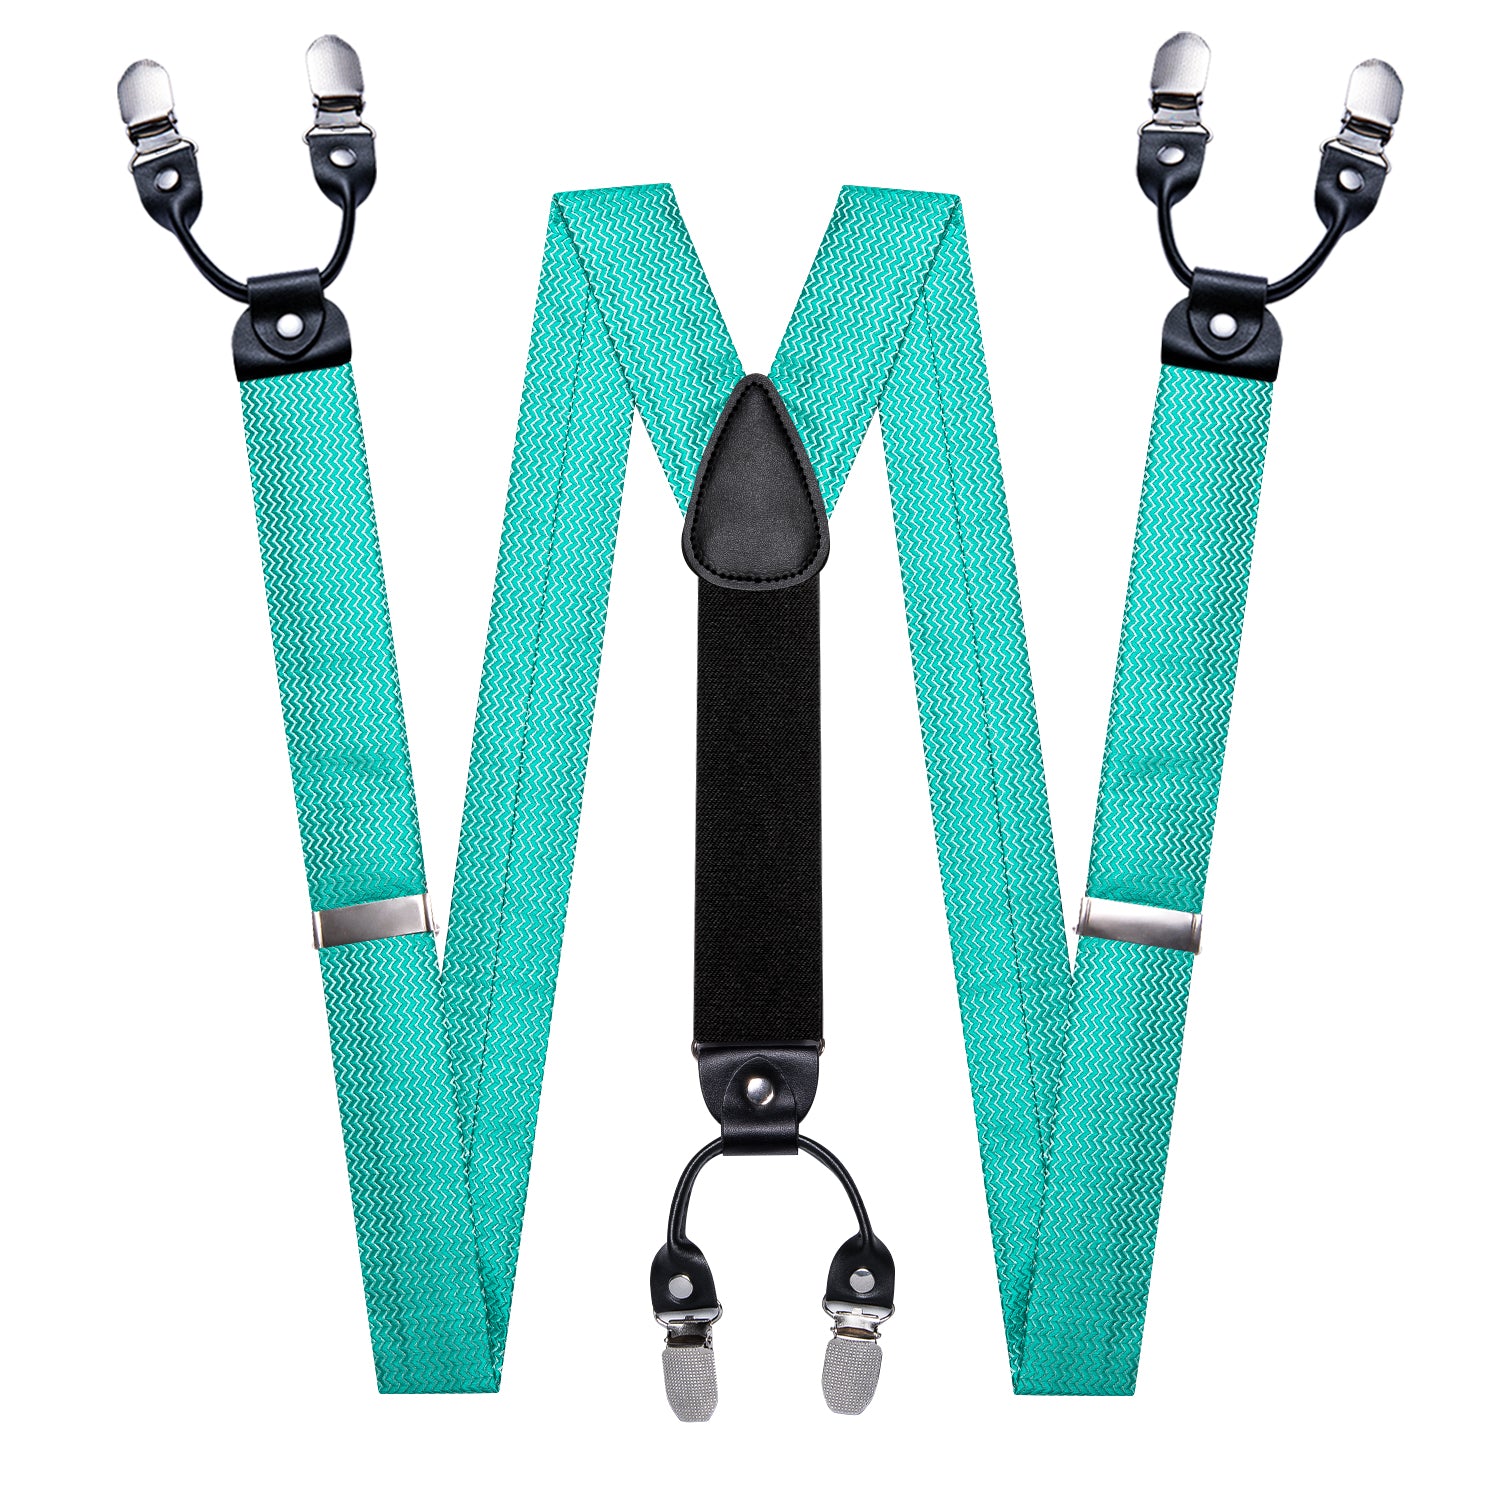 Aqua Solid Y Back Adjustable Bow Tie Suspenders Set